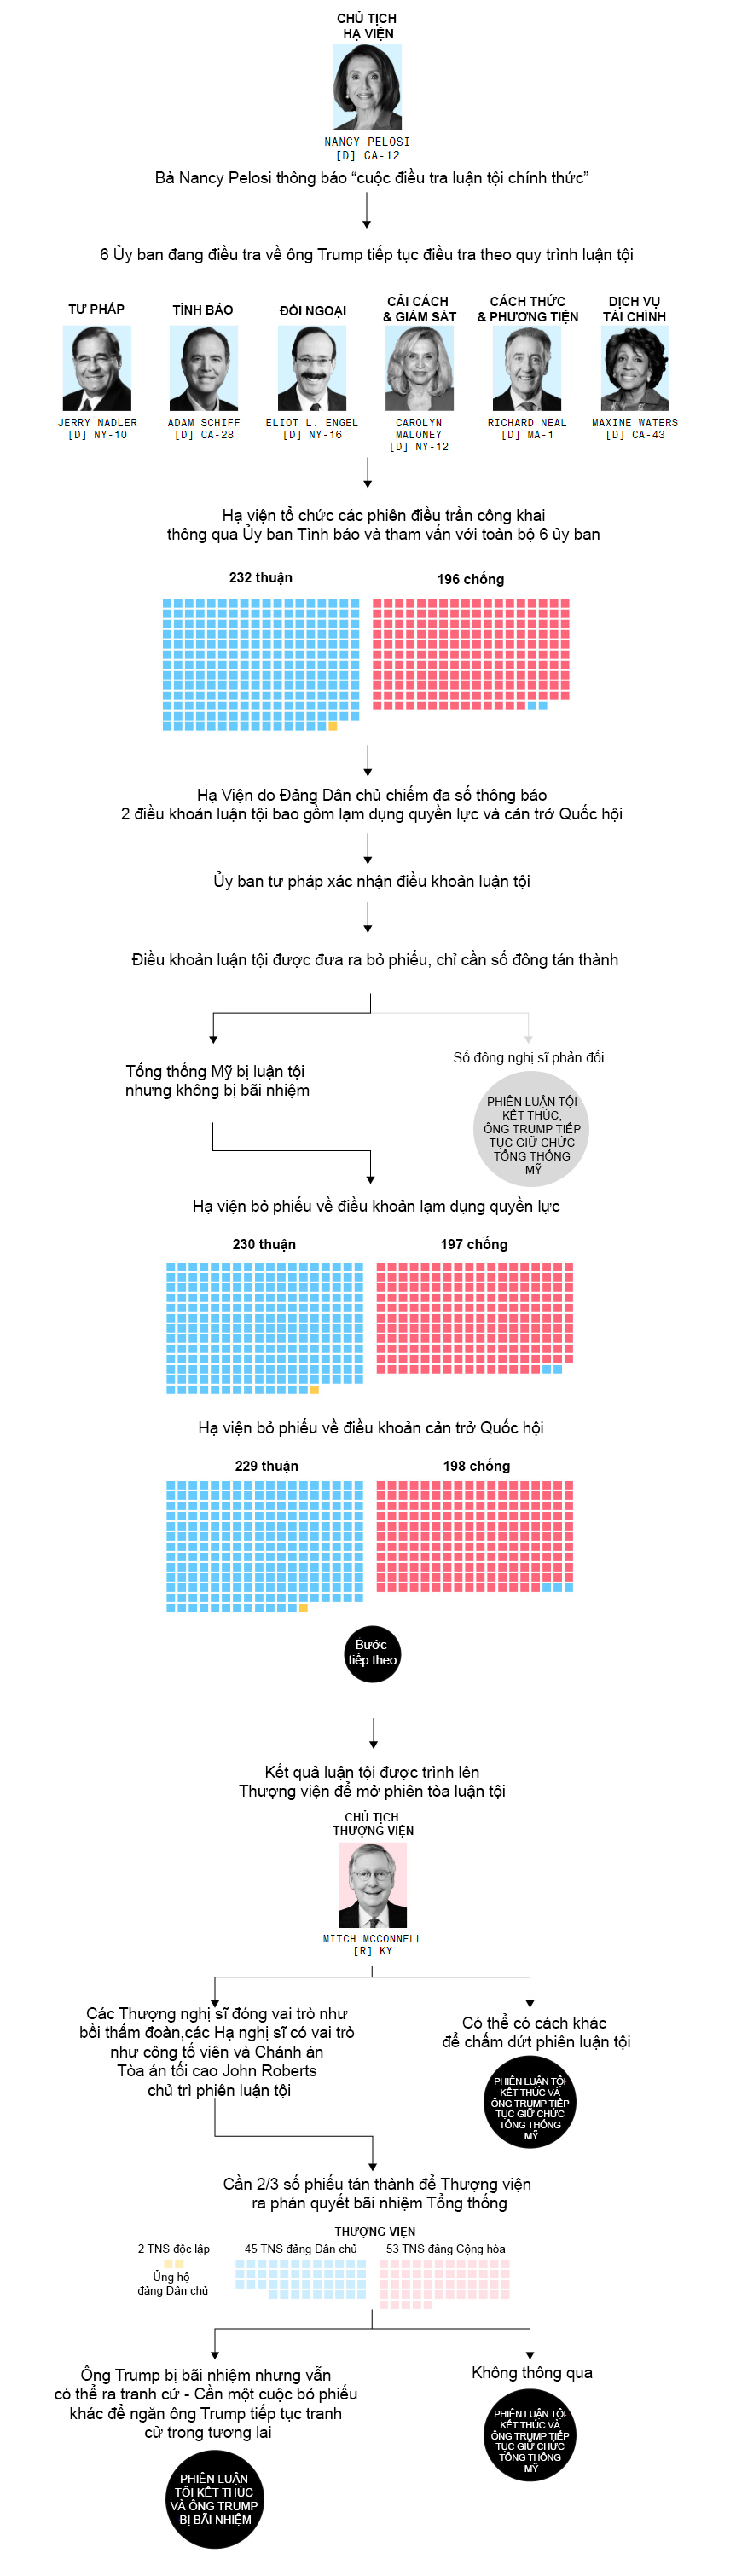 Infographic: Các bước trong quá trình luận tội Tổng thống Mỹ Donald Trump - 1